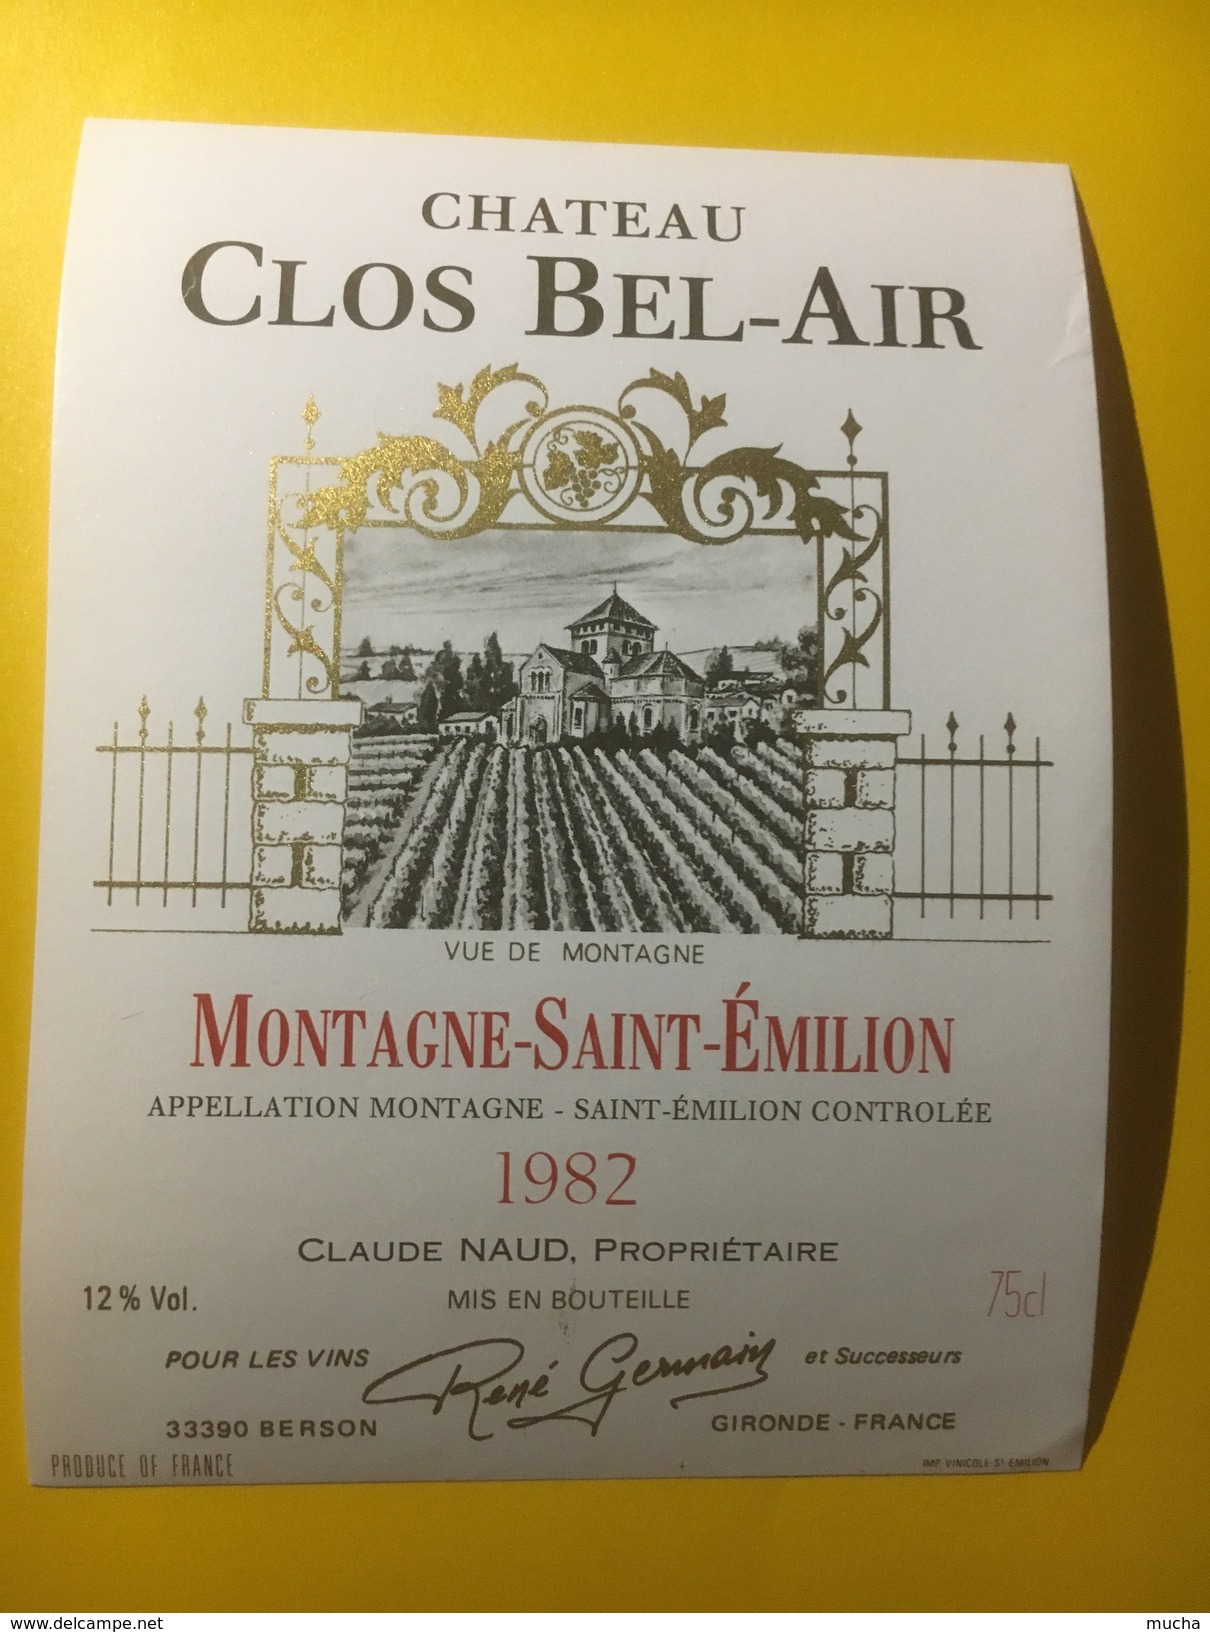 3560 -  Château Clos Bel-Air 1982 Montagne-Saint-Emilion - Bordeaux